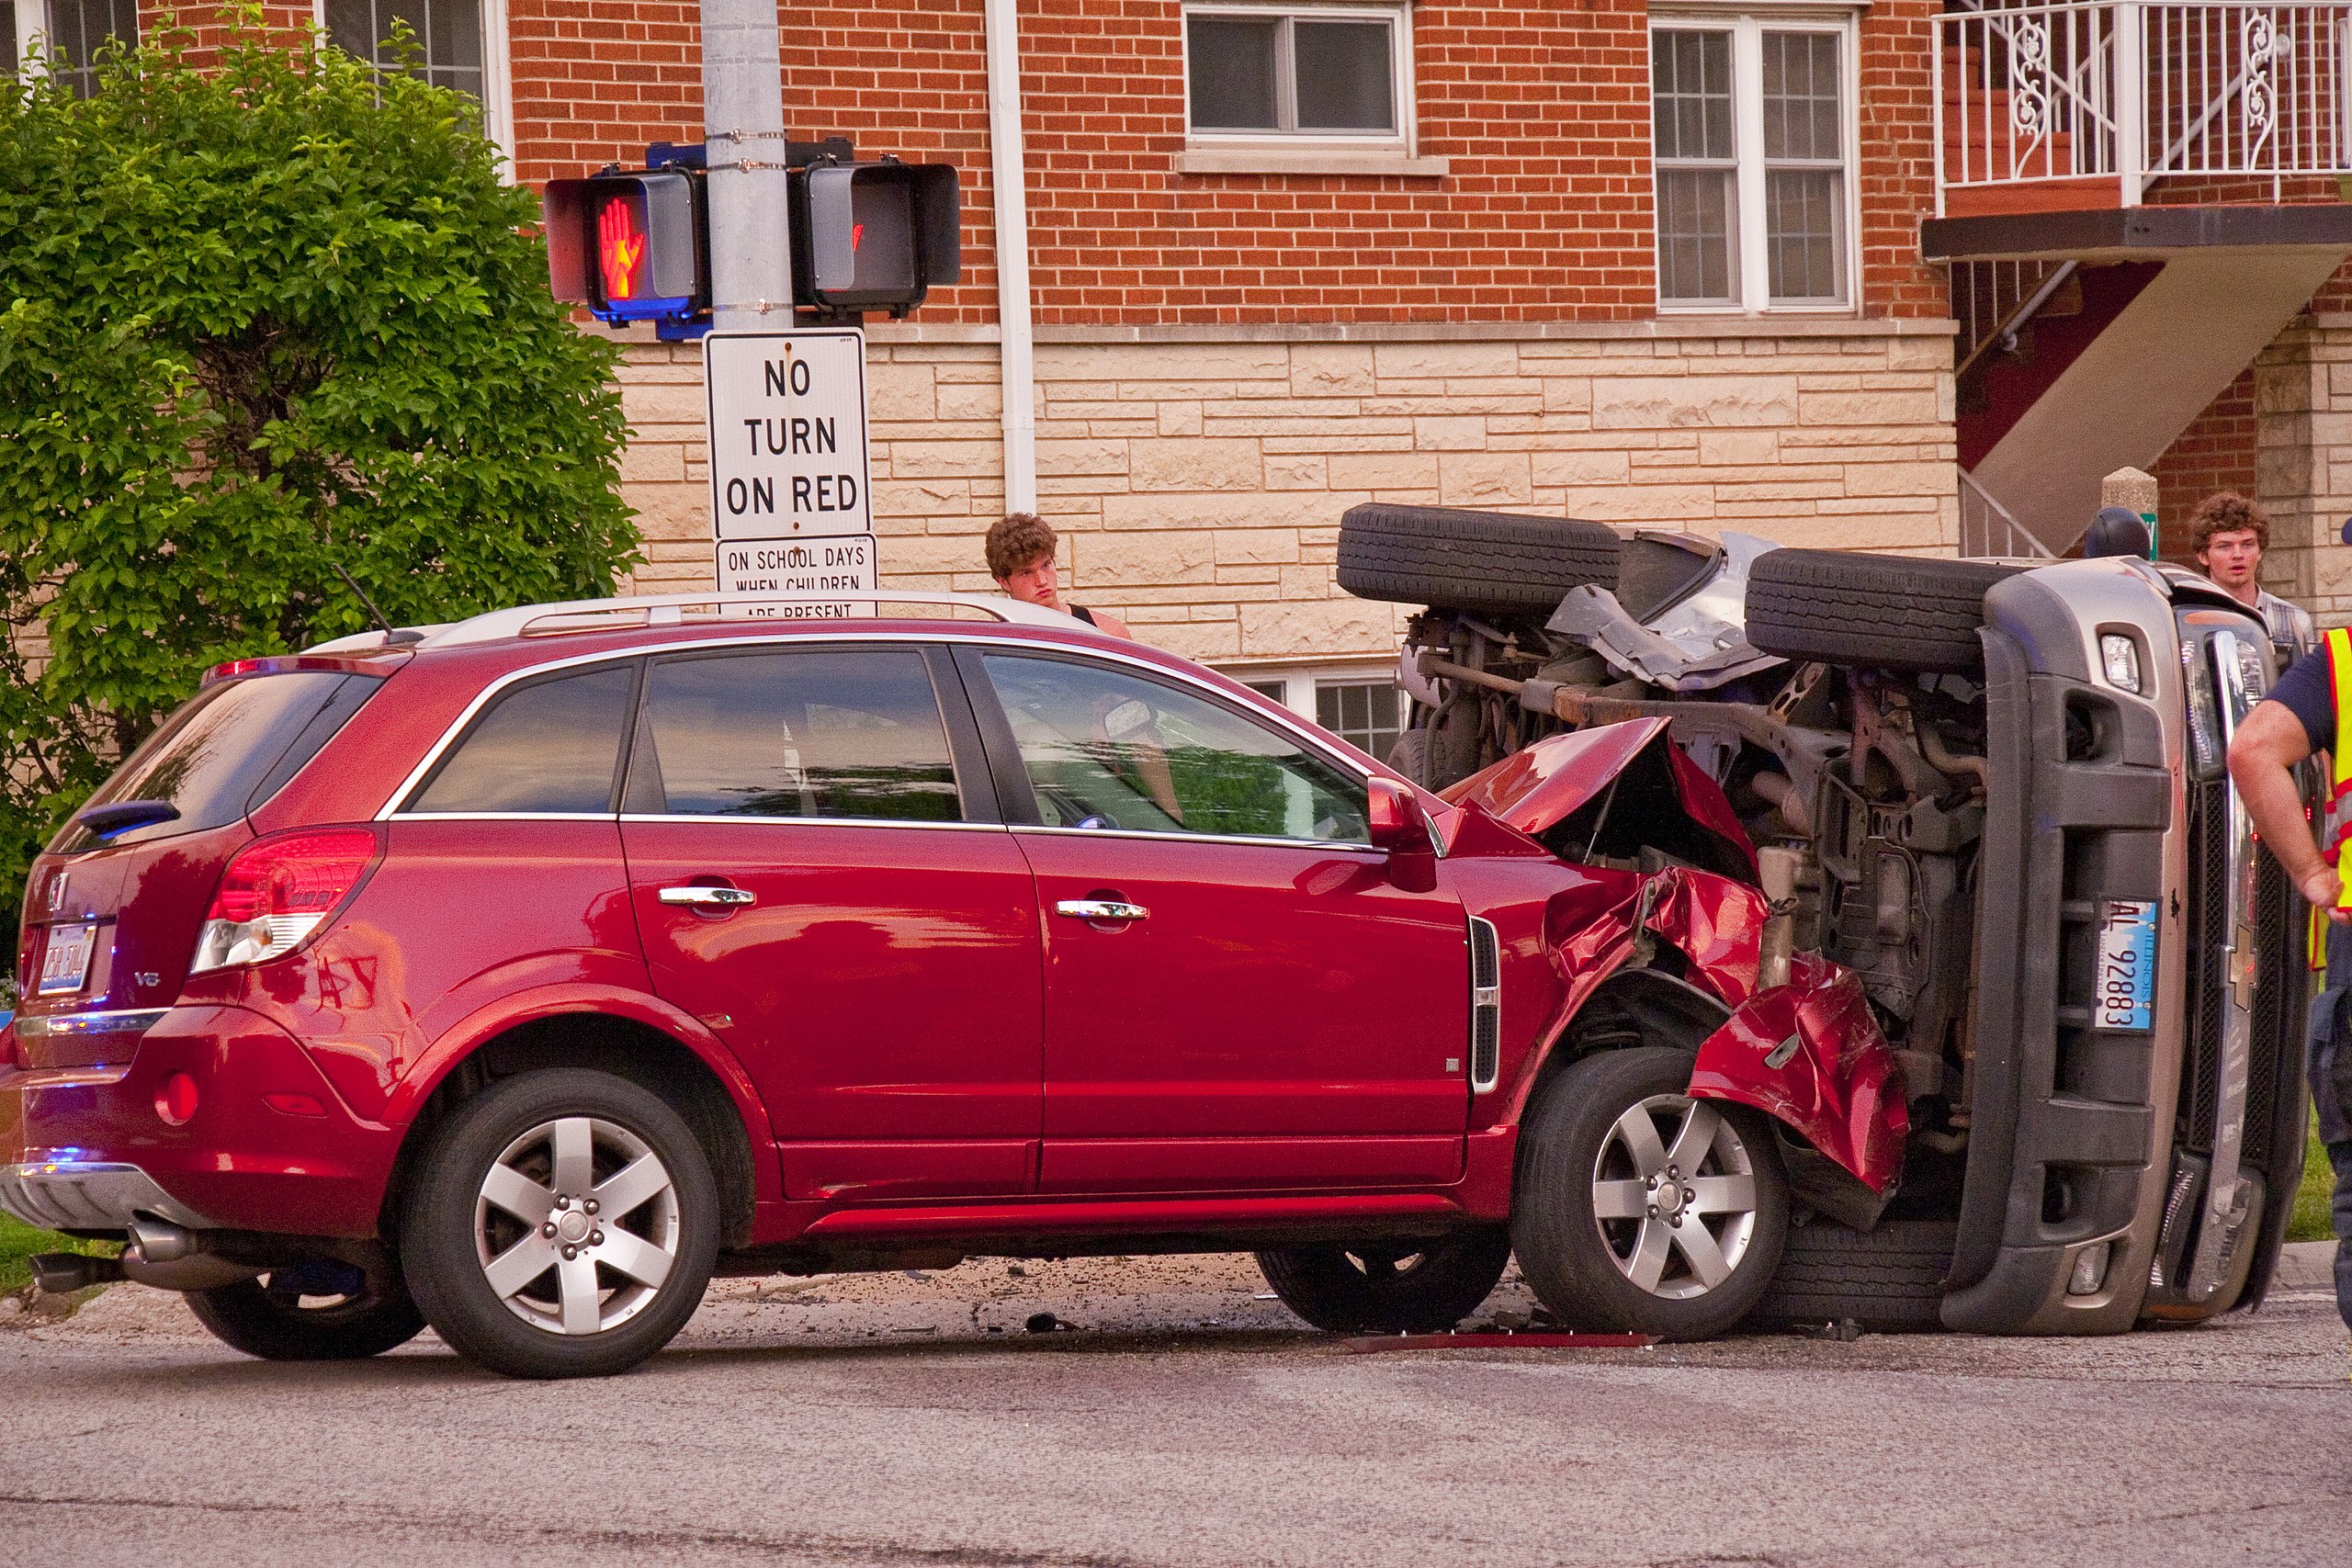 File:Car crash 1.jpg - Wikipedia